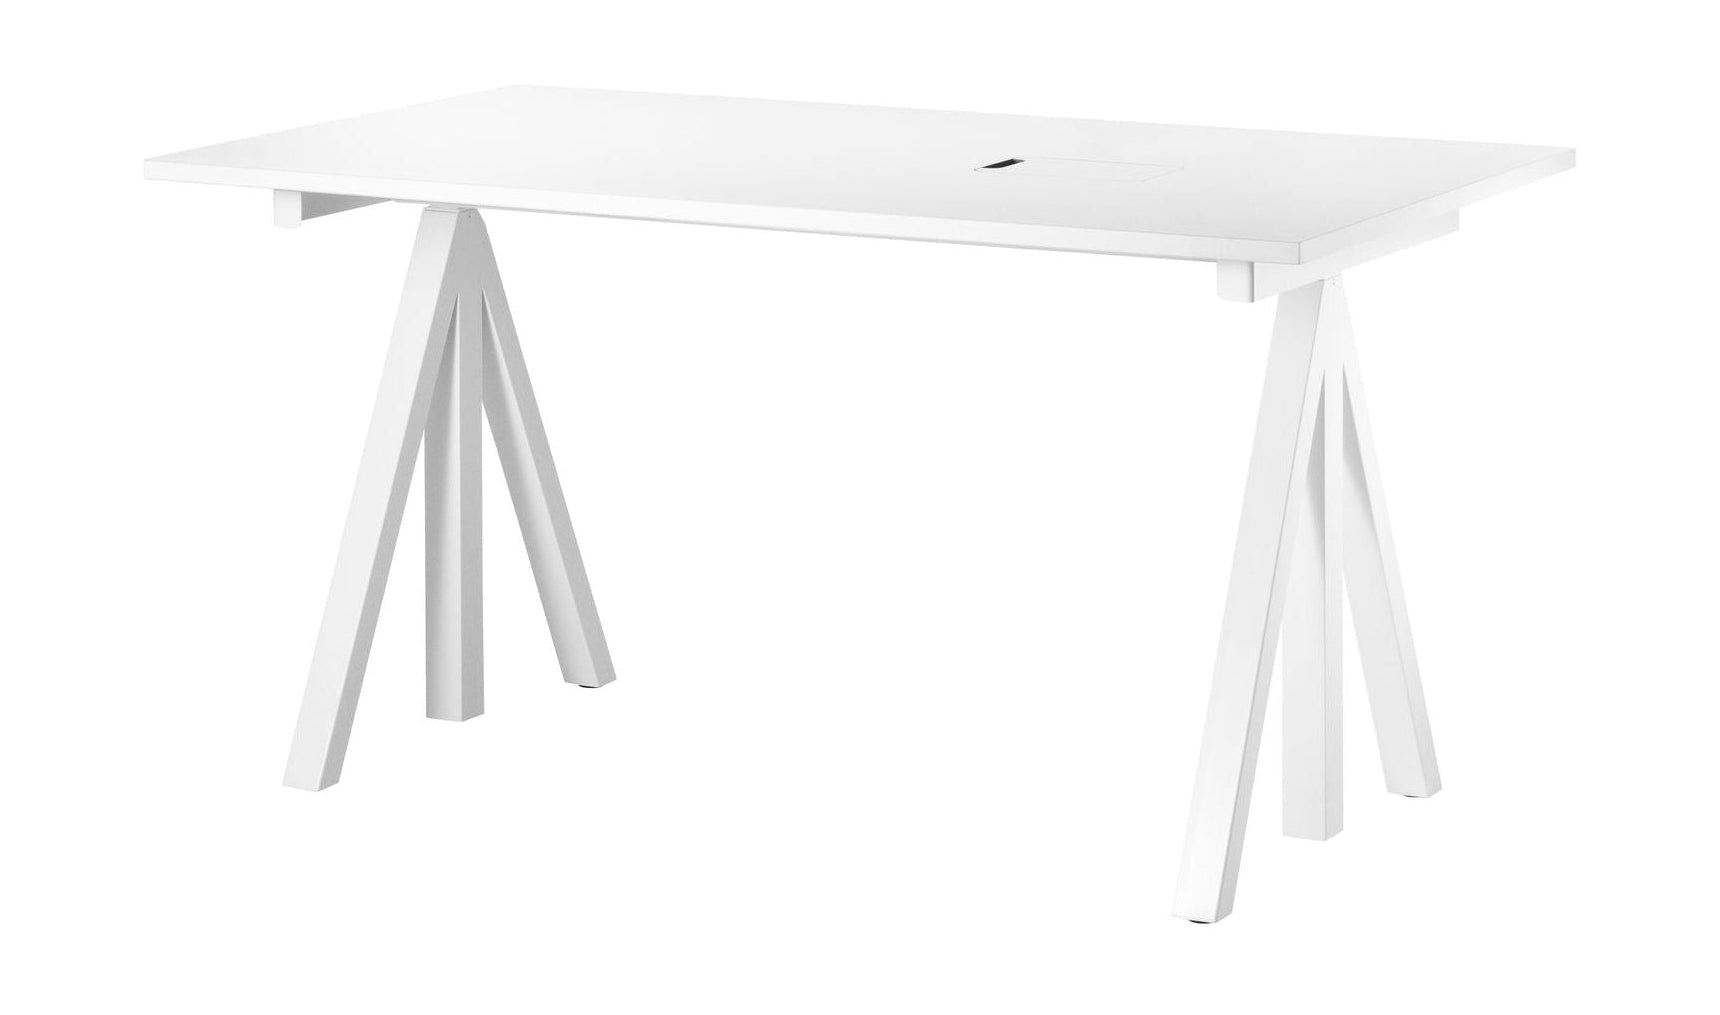 Tableau de travail réglable de la hauteur des meubles de cordes 78x140 cm, stratifié blanc